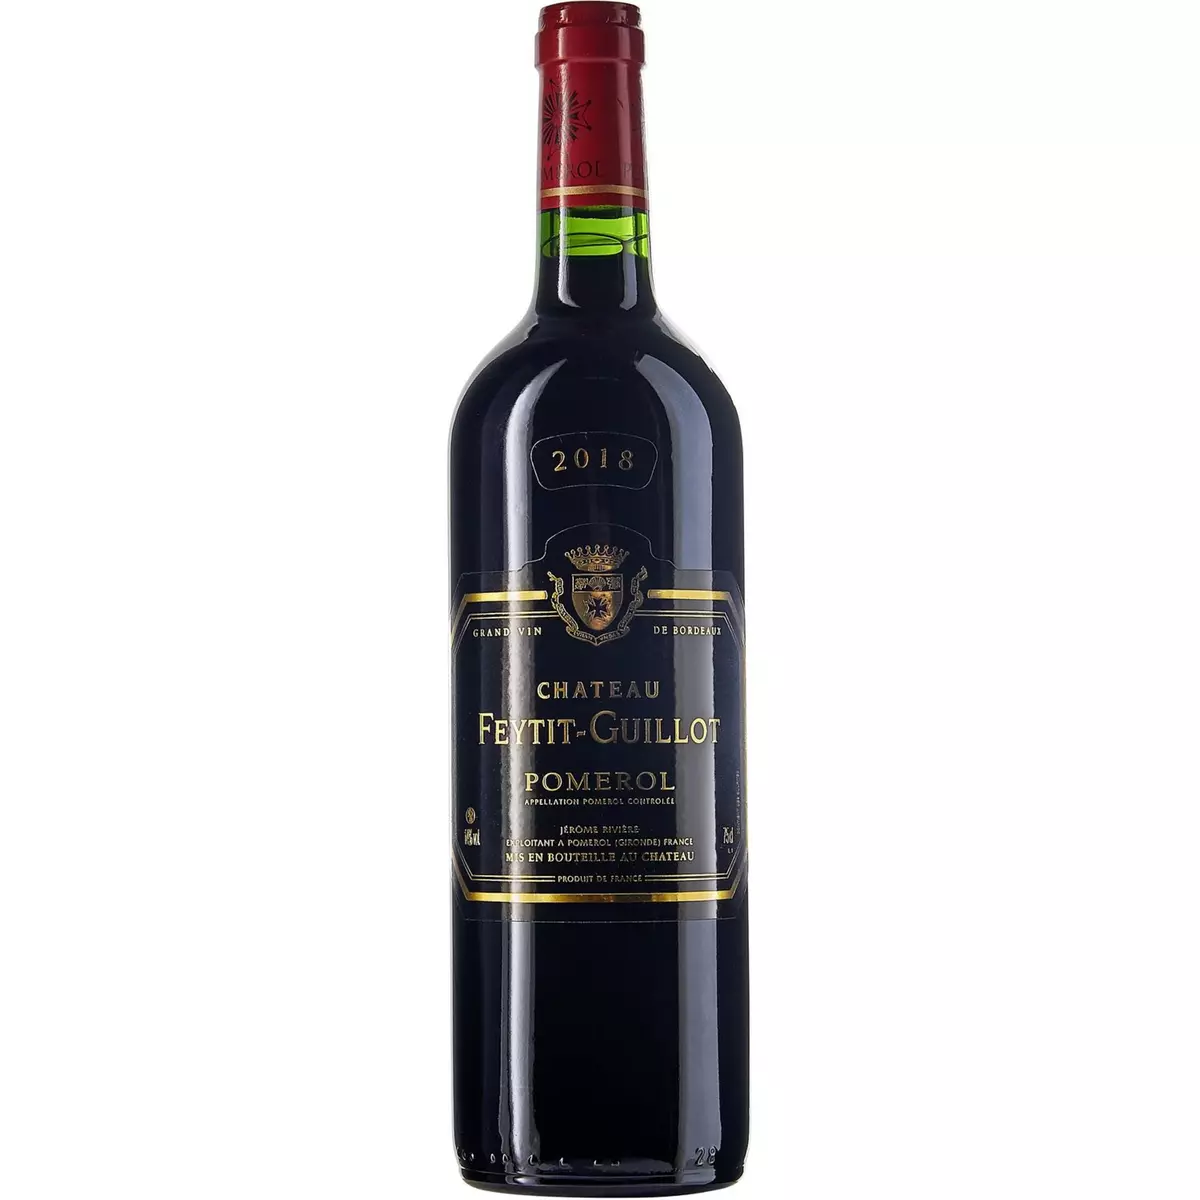 Vin rouge AOP Pomerol Château Feytit Guillot 2018 75cl